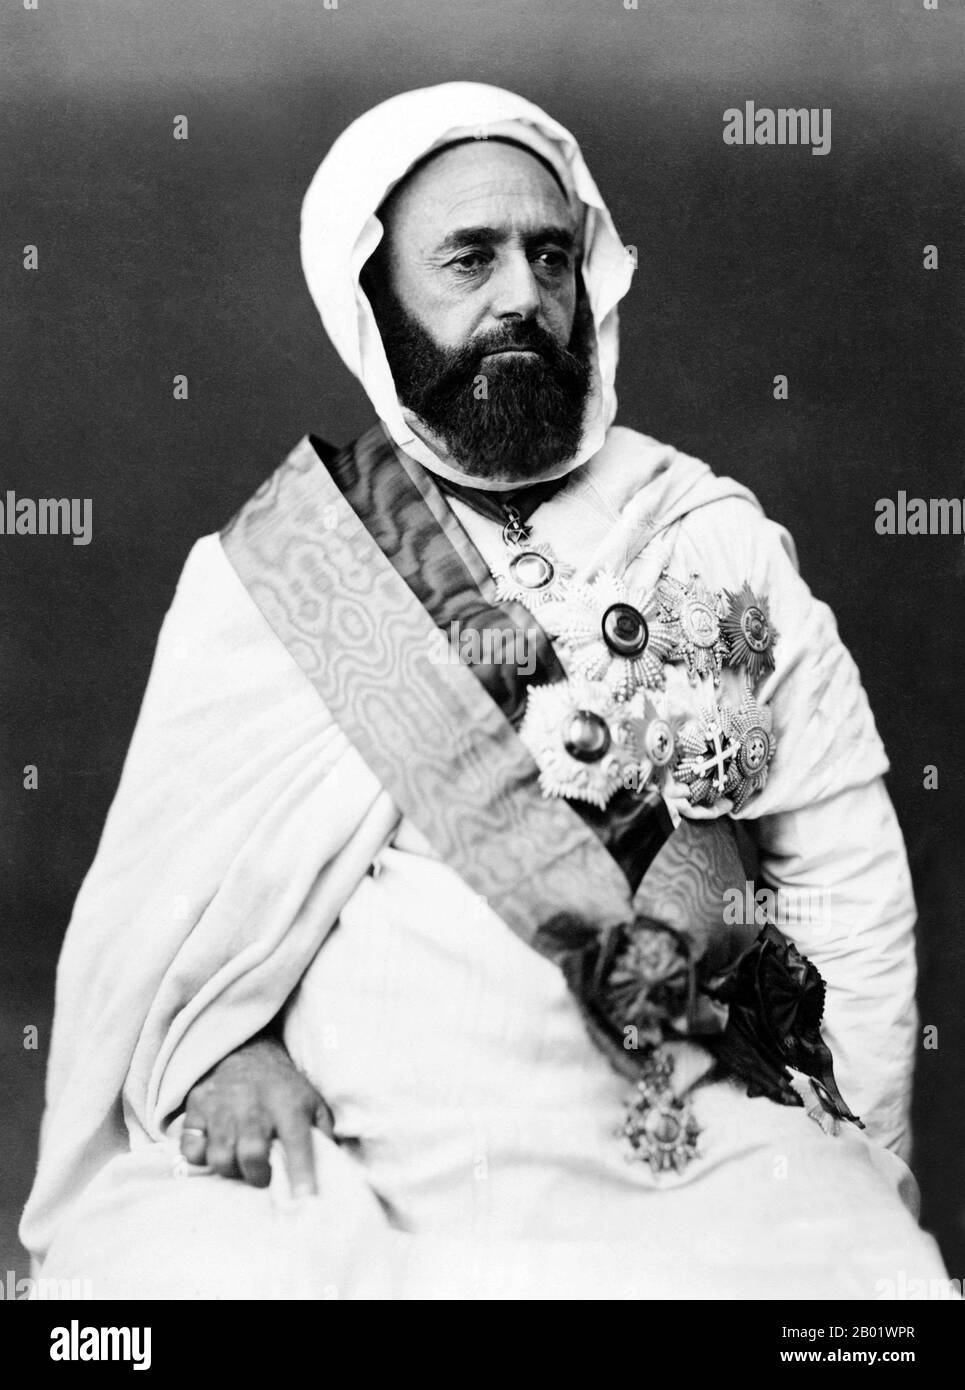 Algérie/Syrie : Abdul Qadir ibn Muhyiddin (6 septembre 1808 - 26 mai 1883), combattant algérien de la liberté, en exil à Damas. Photo d'Etienne Carjat (1828-1906), v. 1865. Abd El-Kader ibn Muhieddine, également connu sous le nom de Emīr Abdelkader ou Abd al-Qadir al-Hassani al-Jaza'iri, était un érudit islamique algérien et un chef politique et militaire soufi qui a mené une lutte contre l'invasion française au milieu du XIXe siècle, pour laquelle il est considéré par certains Algériens comme leur héros national. Banque D'Images